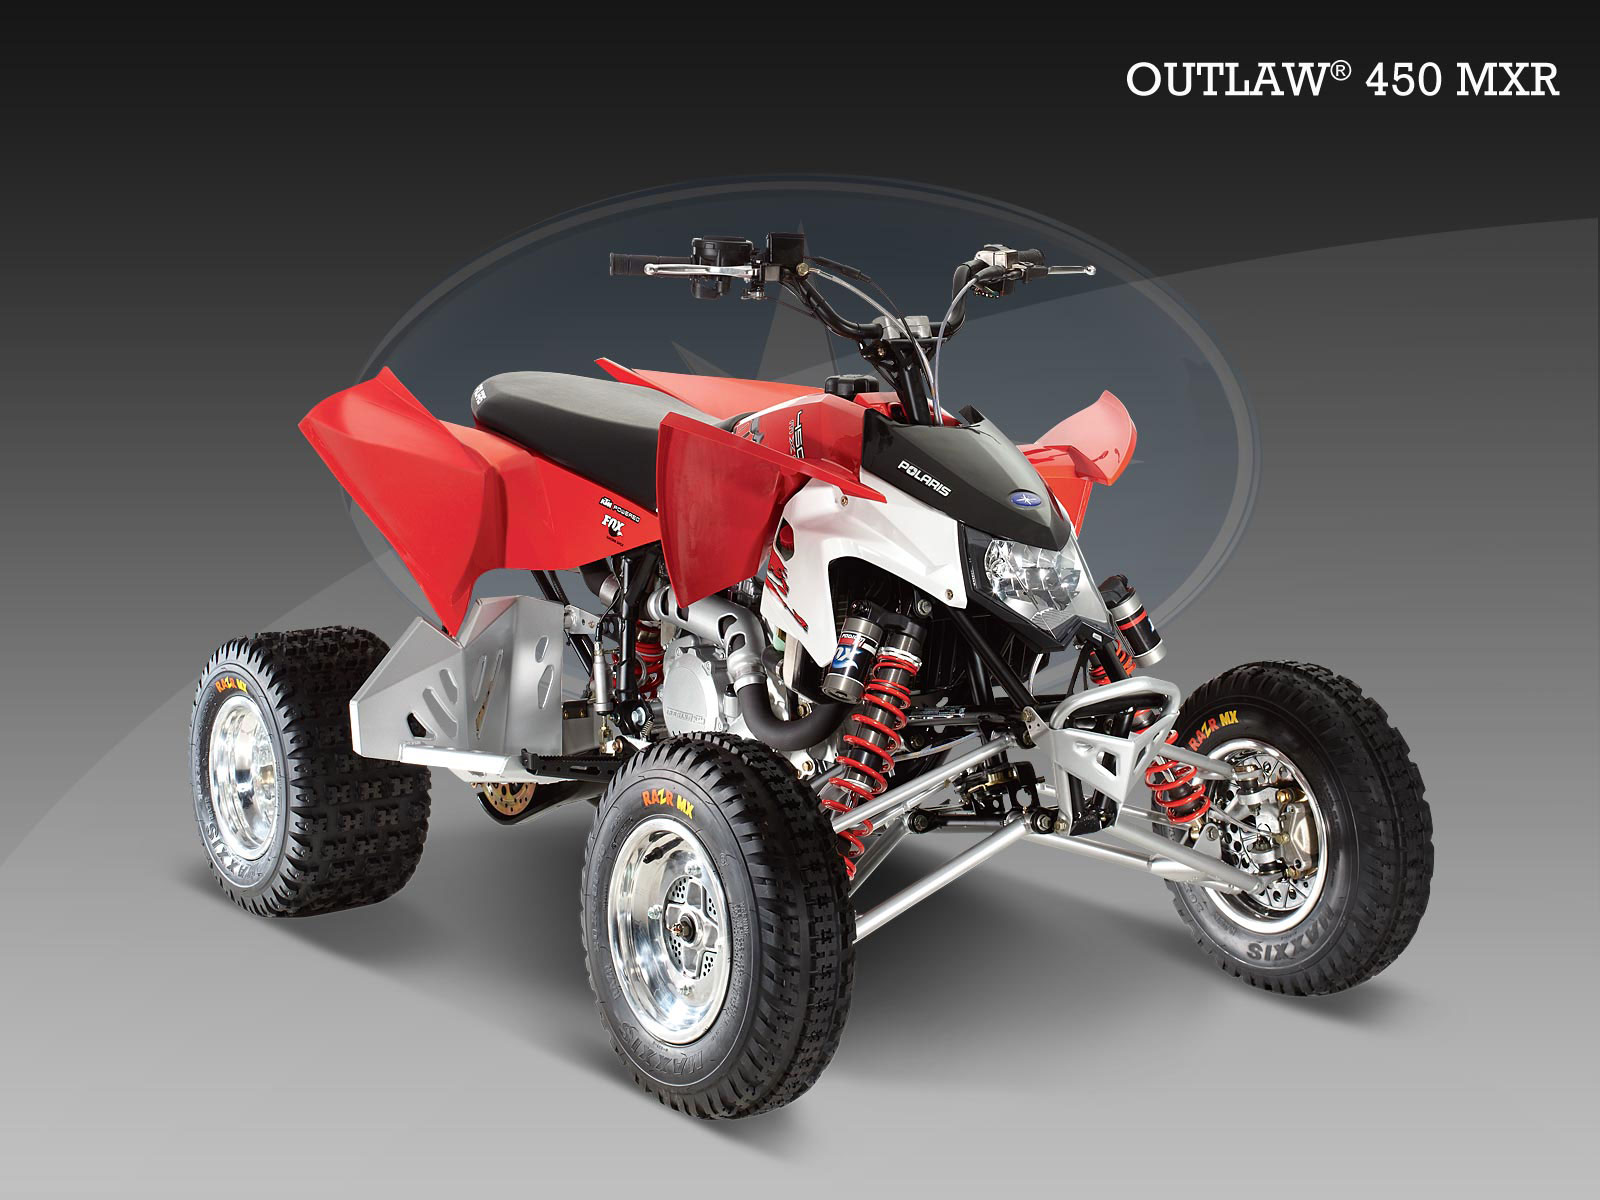 Details about   3 Pcs 1st Oil Filter For Polaris ATV 450 Outlaw MXR S 2008 2009 AU stock 